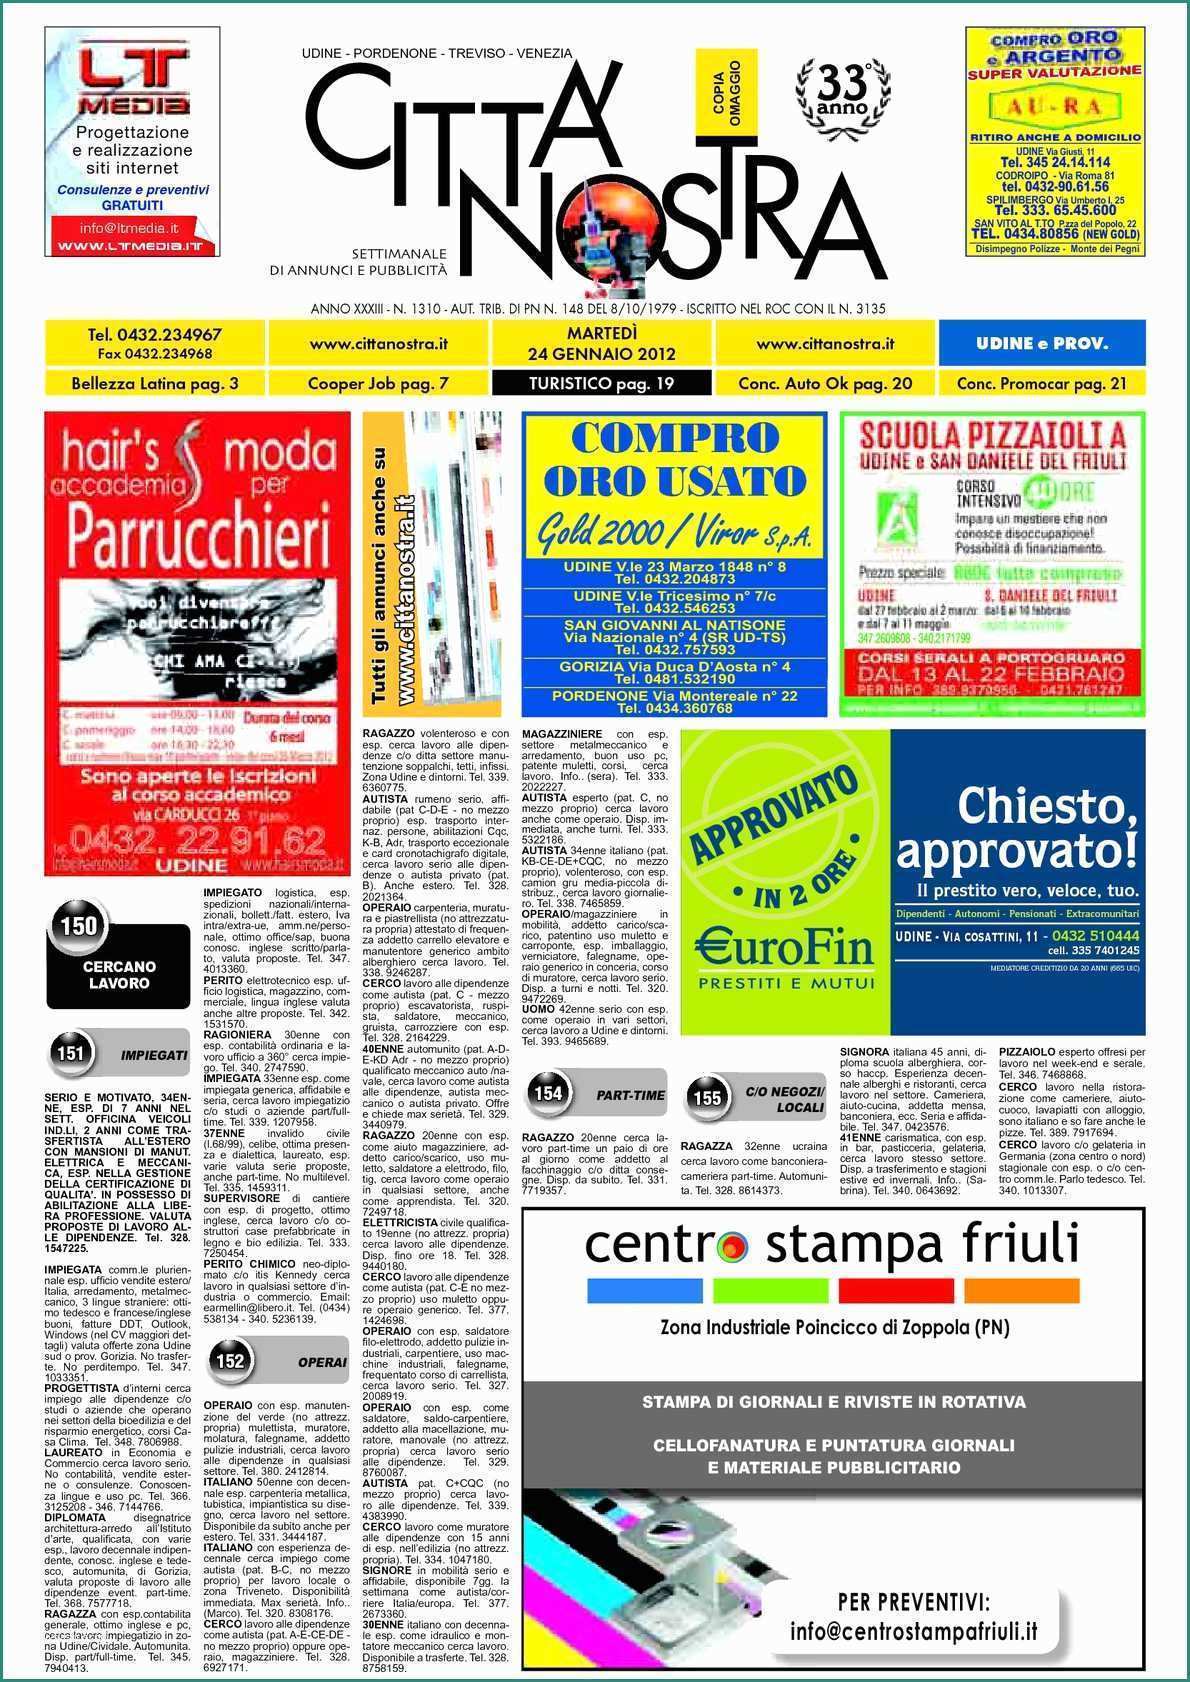 Capannoni Agricoli In Ferro E Calaméo Citt  Nostra Udine Del 24 01 2012 N 1310